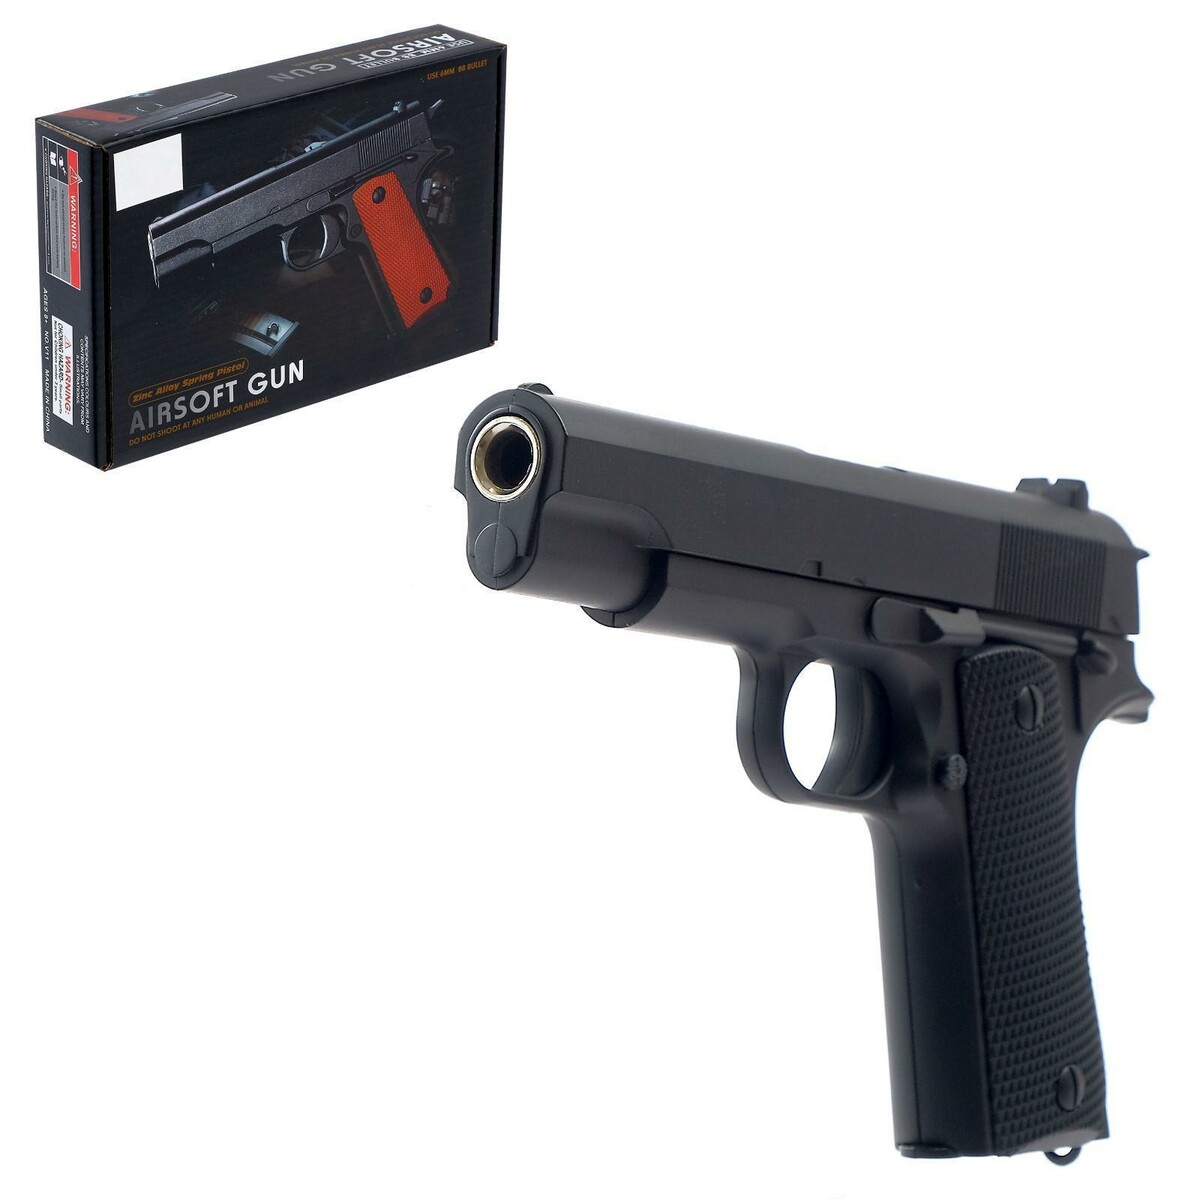 Пистолет пневматический детский пистолет пневматический для подкачки шин matrix 57322